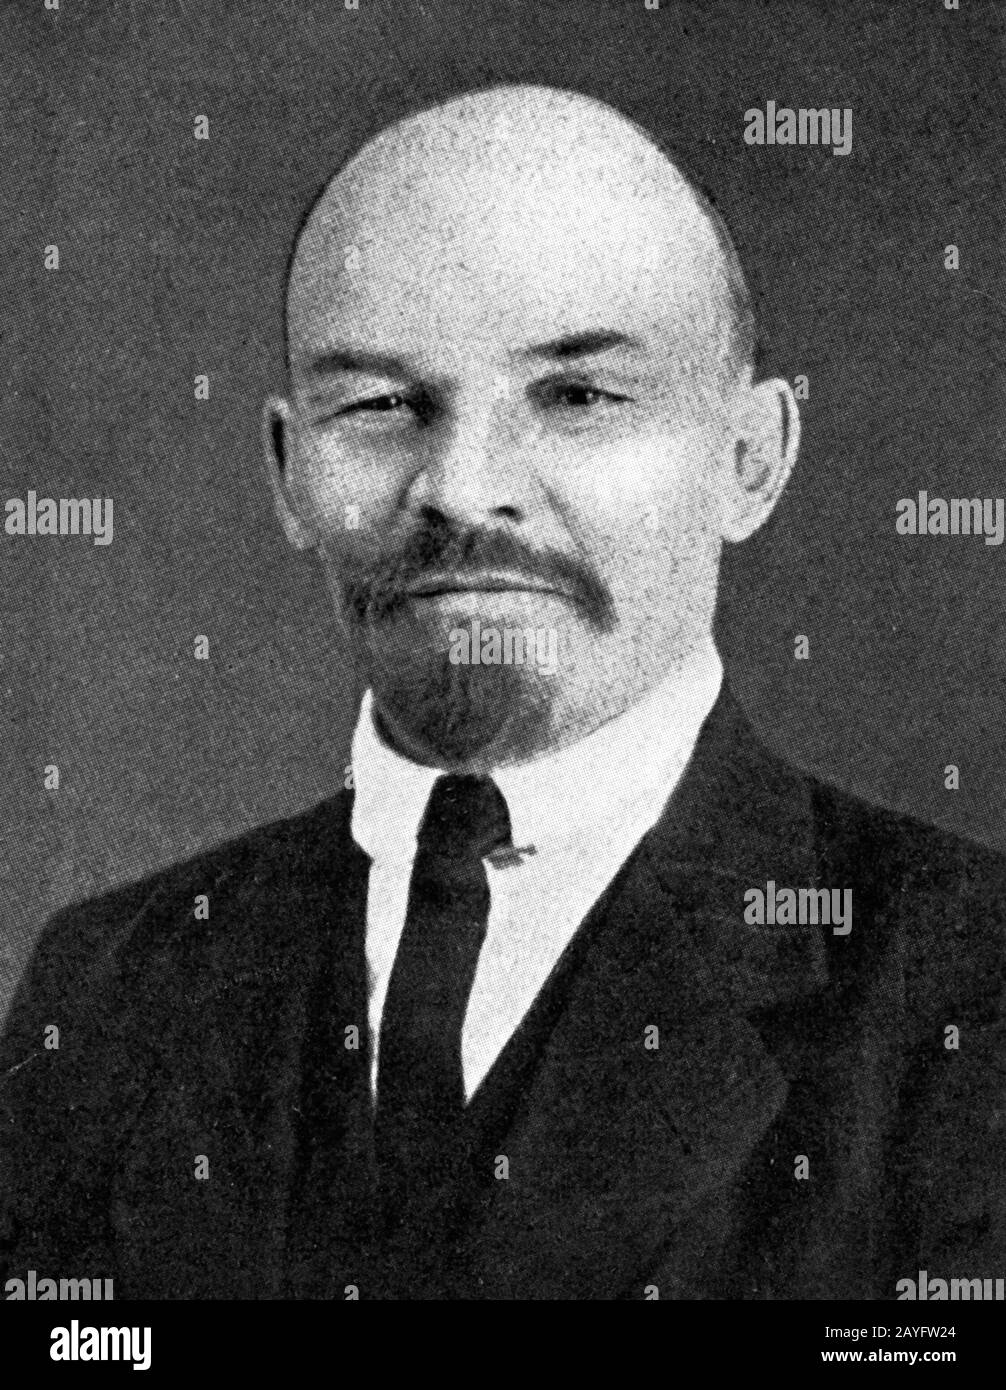 Vladimir Ilyich Ulyanov o Lenin un rivoluzionario comunista, capo del governo della Russia sovietica dal 1917 al 1924 e dell'Unione Sovietica dal 1922 al 1924. Da una rivista del 1917 circa Foto Stock